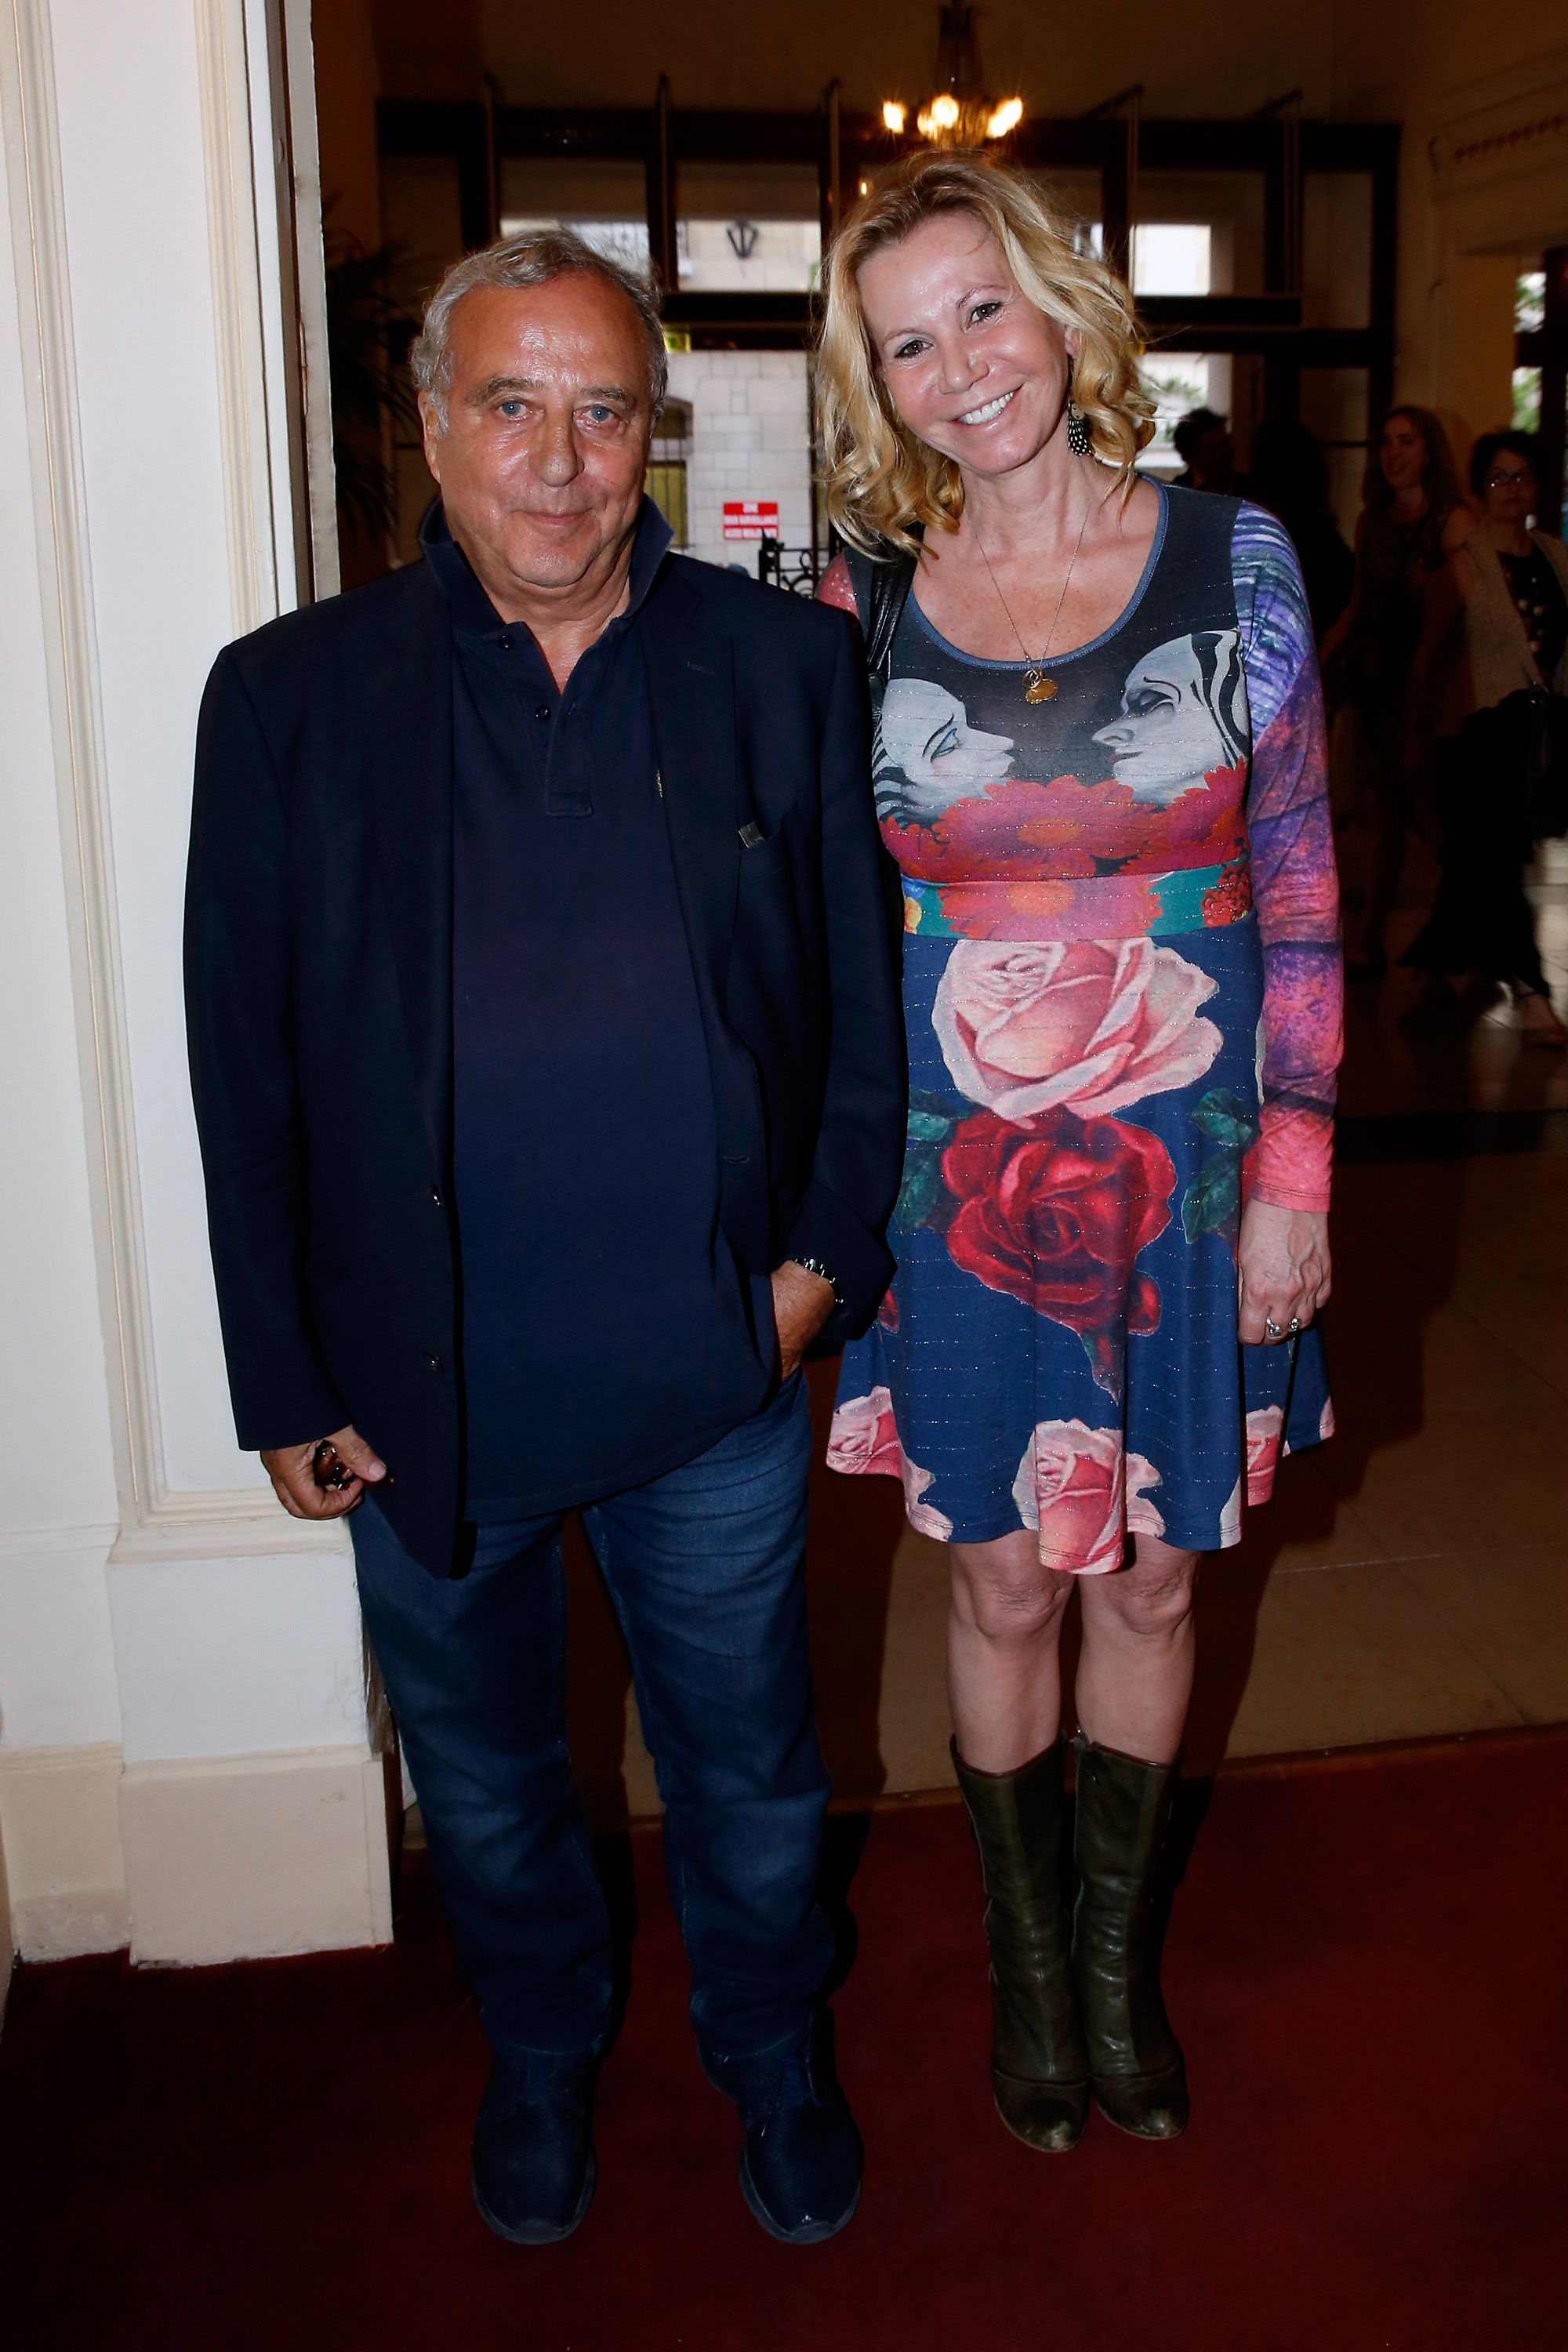 Daniel Hechter et Fiona Gelin assistent à la pièce de théâtre "Open Space" au Théâtre de Paris le 11 mai 2015 à Paris, France. | Photo : Getty Images.